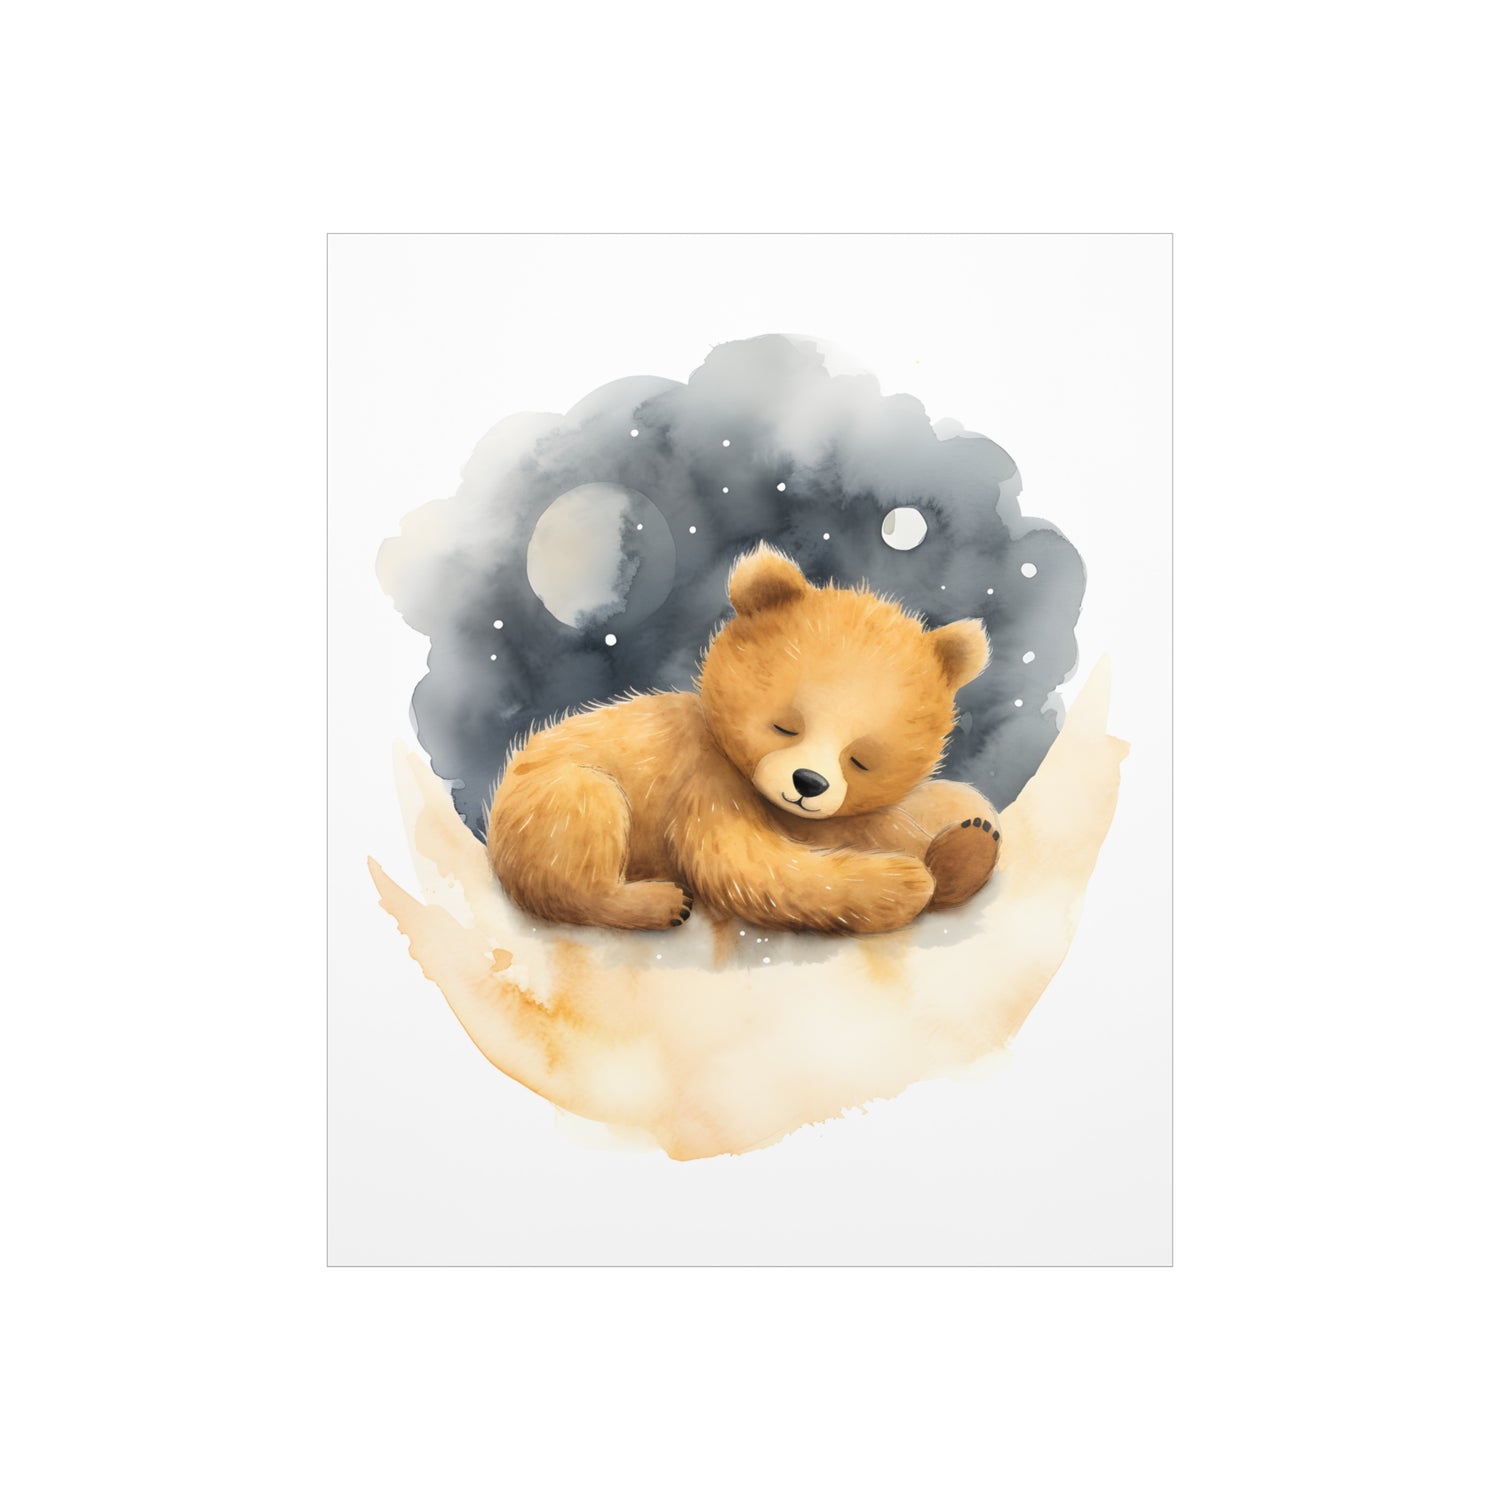 Teddy Bear Print, Bear Nursery Decor, Baby Boy Print, Nursery Wall Art, Moon and Stars, Lovable Teddy, Nursery Decor, Nursery Wall Art. - CosmicDeva